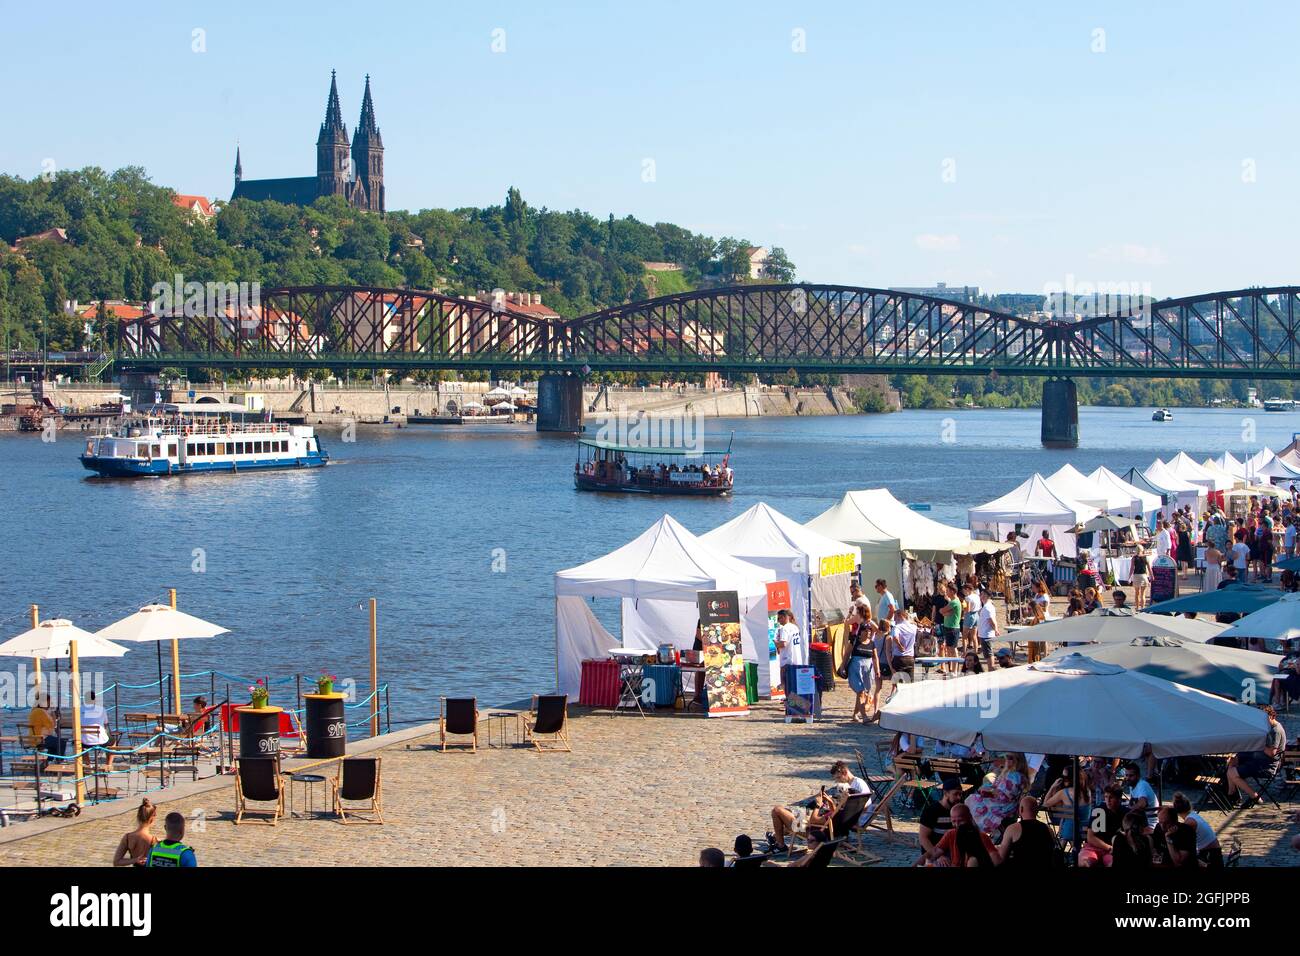 République tchèque, Prague - boutiques et restaurants au quai populaire de SM’chov. Banque D'Images